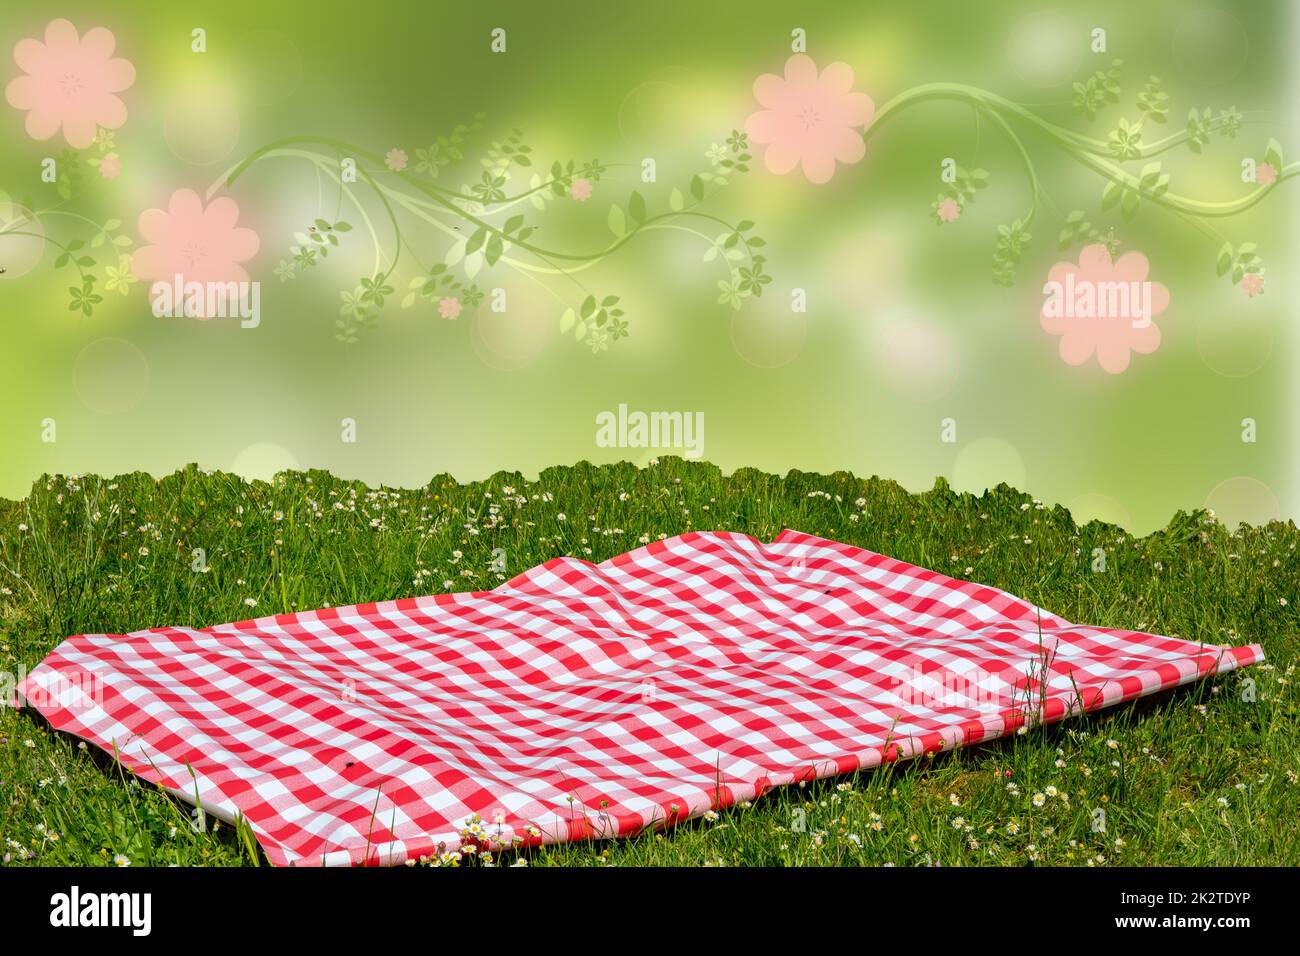 Rotes Picknicktuch. Rote karierte Picknickdecke auf einer Wiese mit blühenden Gänseblümchen und abstraktem Frühlingshintergrund. Schöner Hintergrund für die Produktplatzierung oder -Montage. Stockfoto